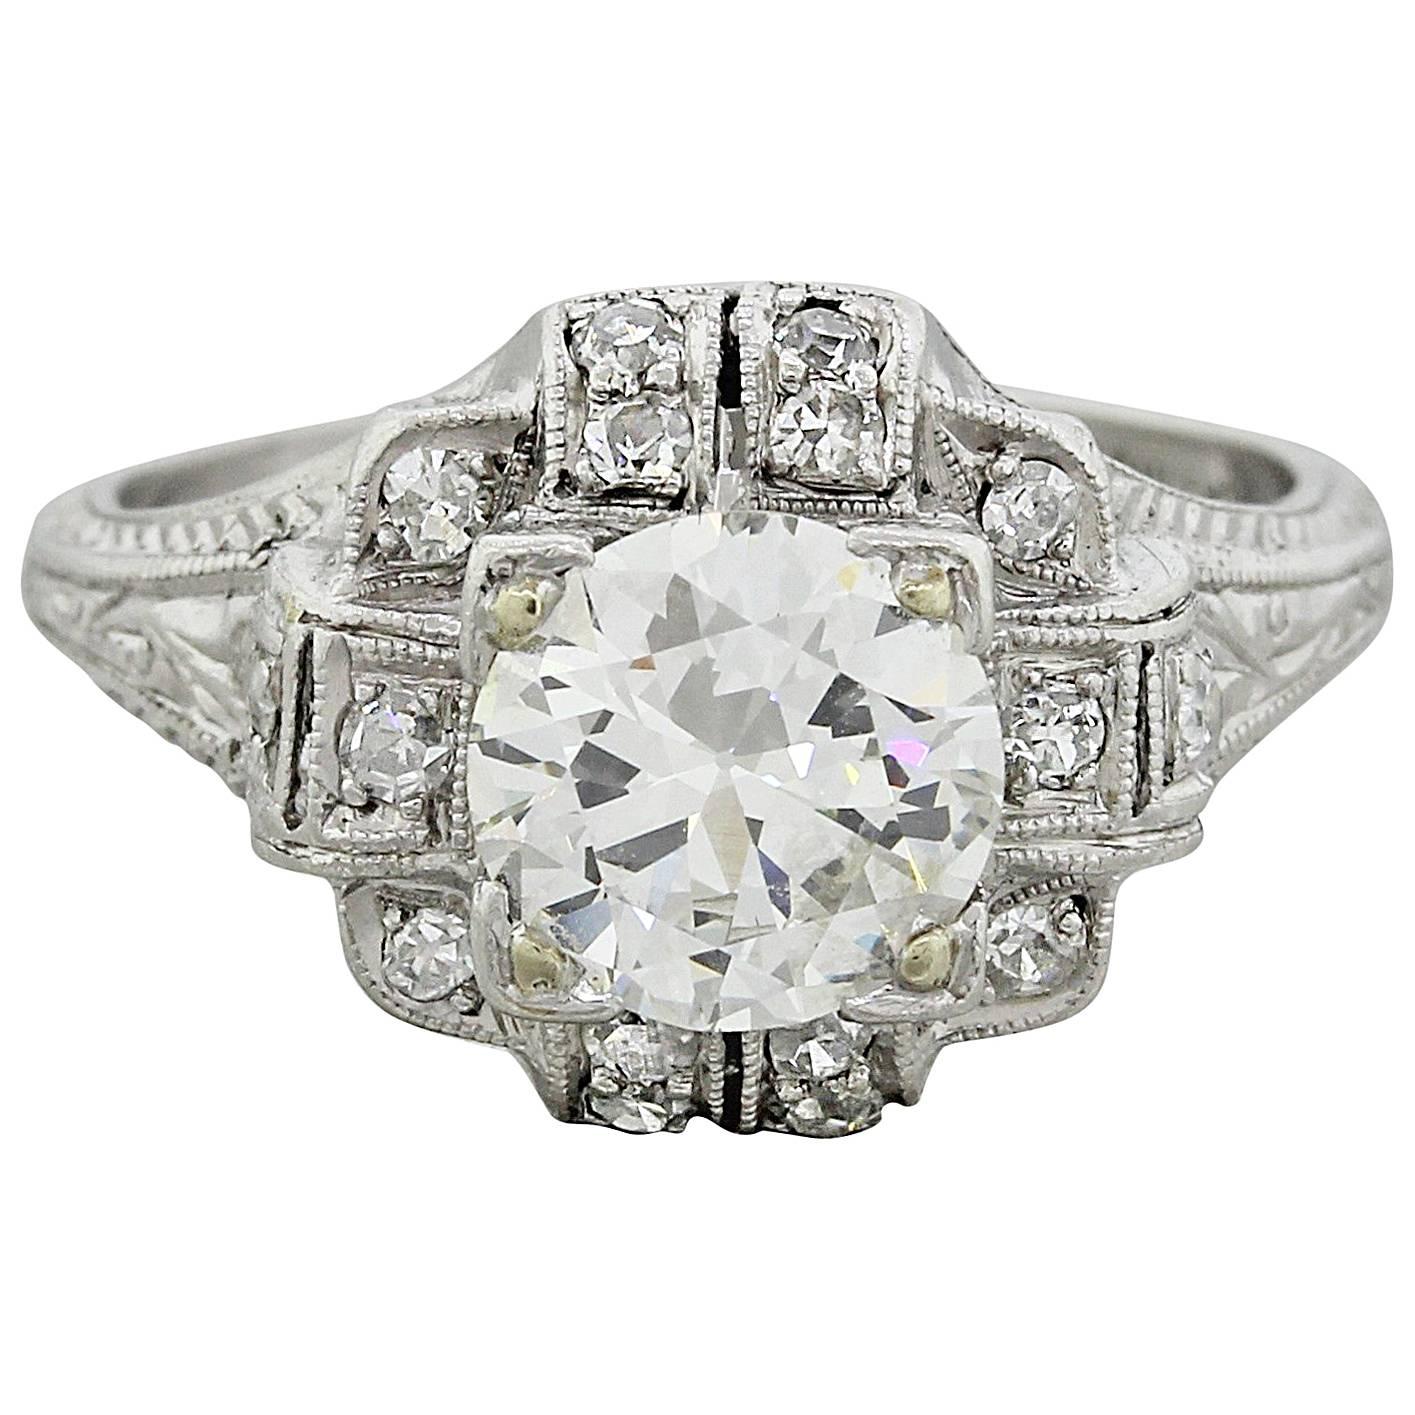 Exquisite Antique Art Deco 1.62 Carat Diamonds Platinum Engagement Ring For Sale